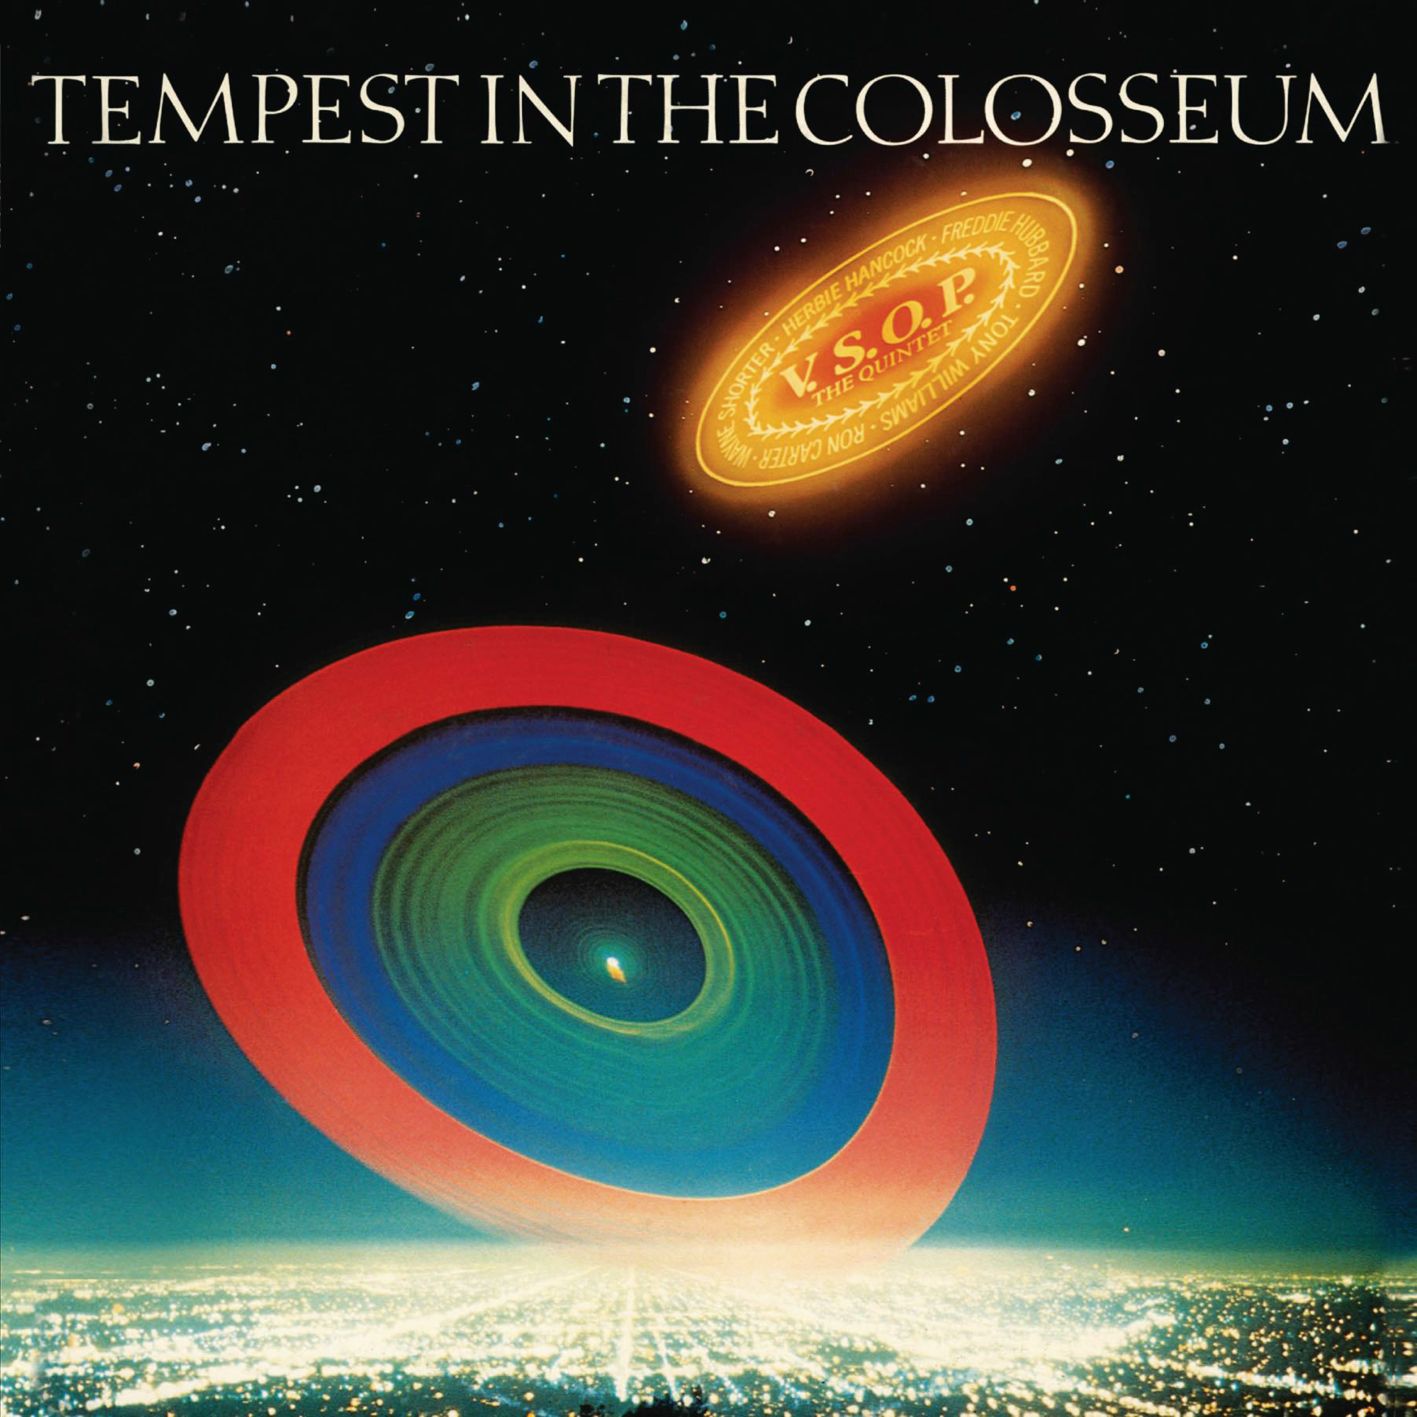 V.S.O.P. The Quintet - Tempest In The Colosseum (1977) [Japanese SACD Reissue 2007] SACD ISO + FLAC 24bit/96kHz